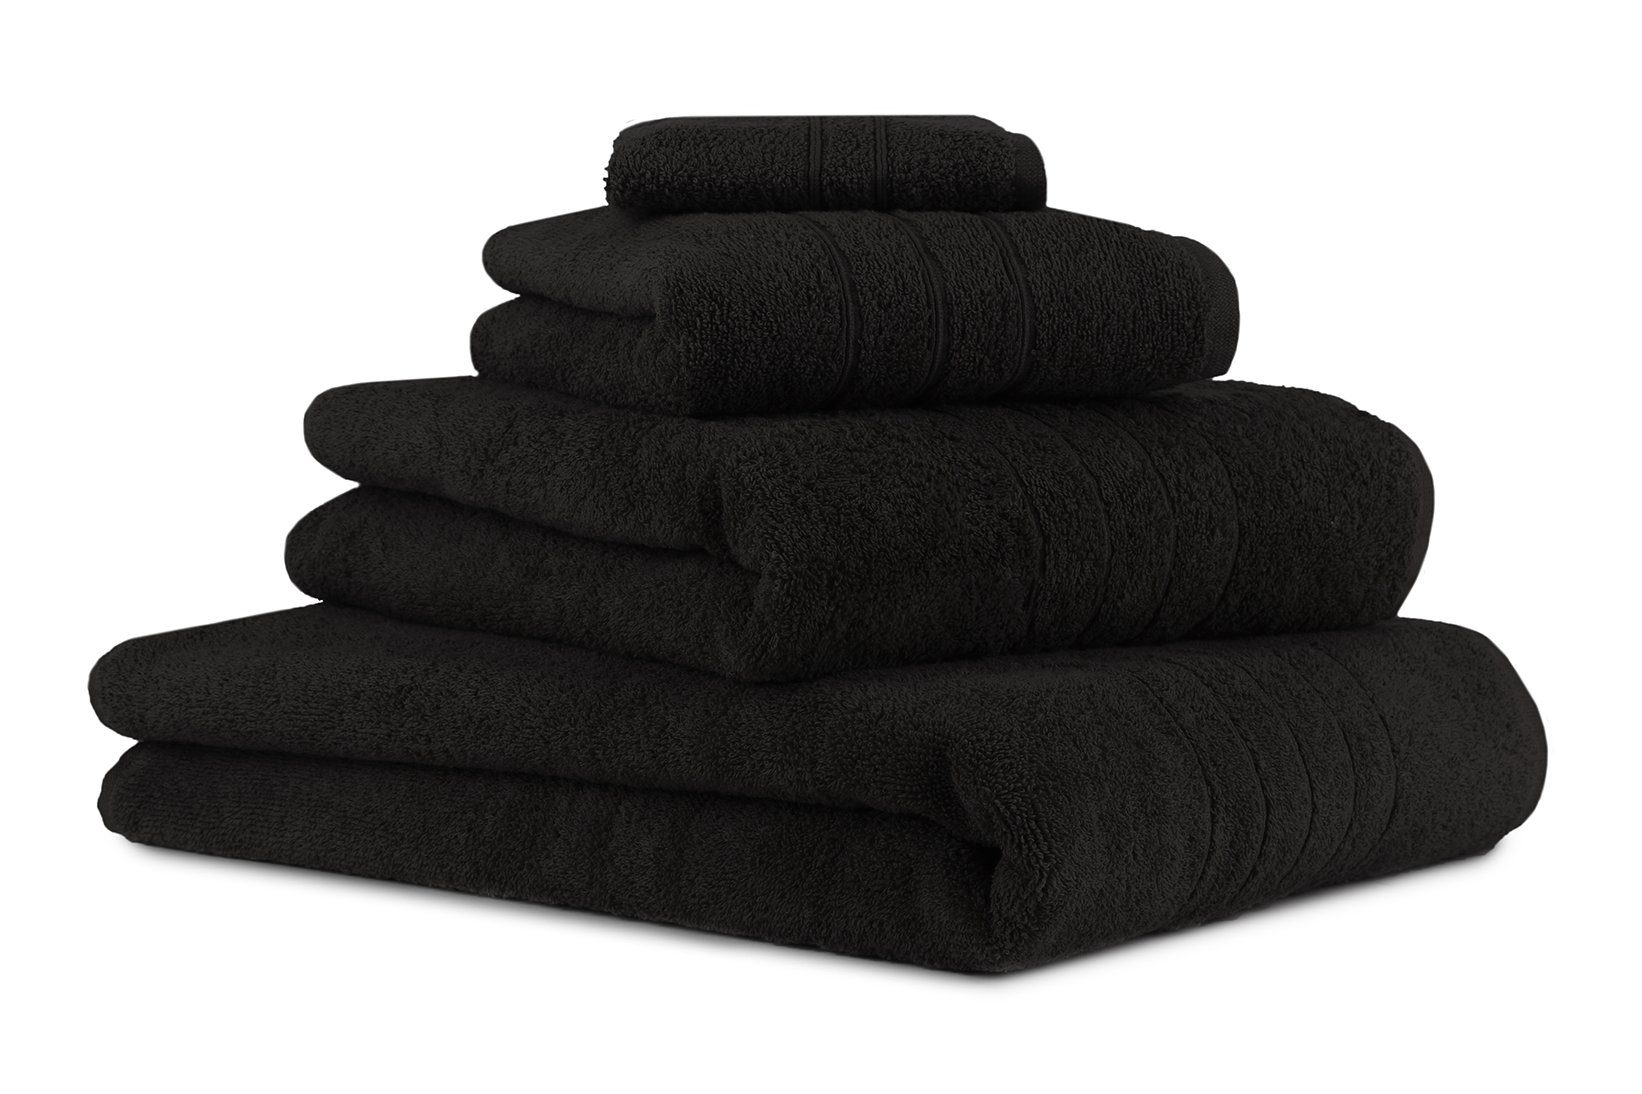 Betz Handtuch Set 4-TLG. Handtuch-Set Deluxe 100% Baumwolle 1 Badetuch 1 Duschtuch 1 Handtuch 1 Seiftuch Farbe schwarz, 100% Baumwolle, (4-tlg) | Handtuch-Sets